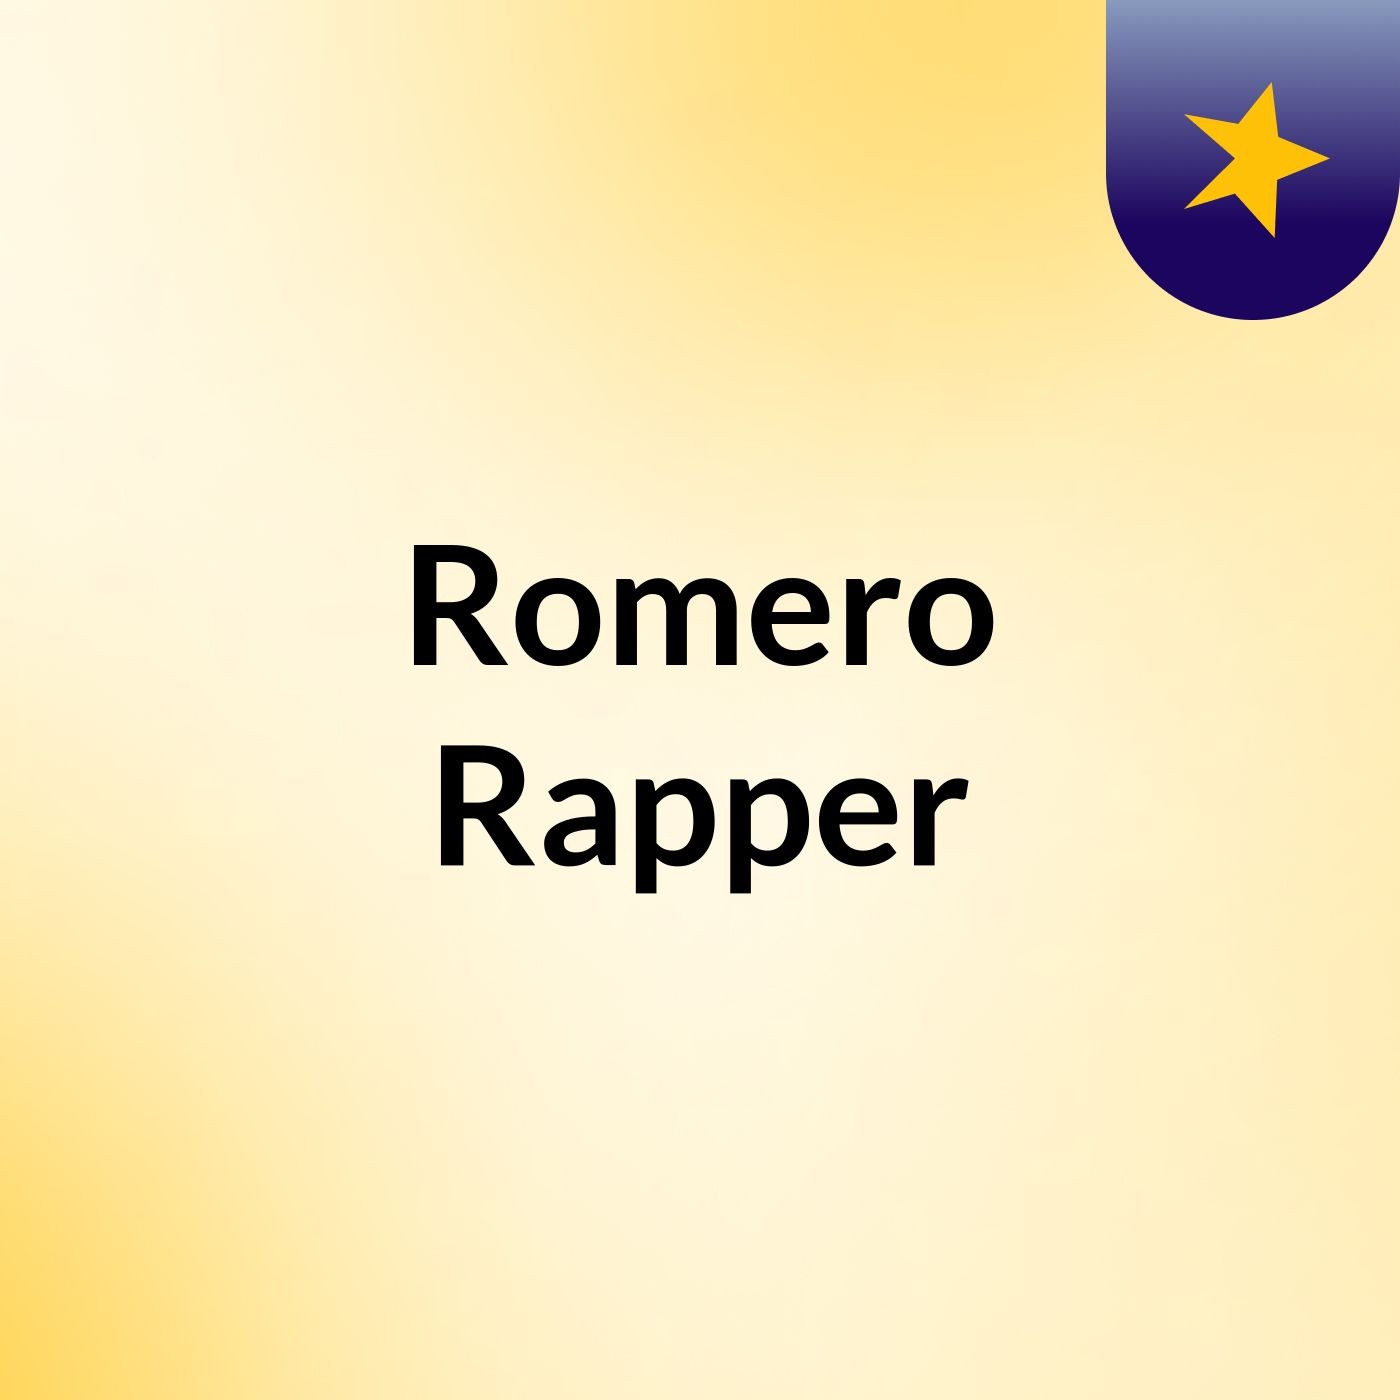 Romero Rapper